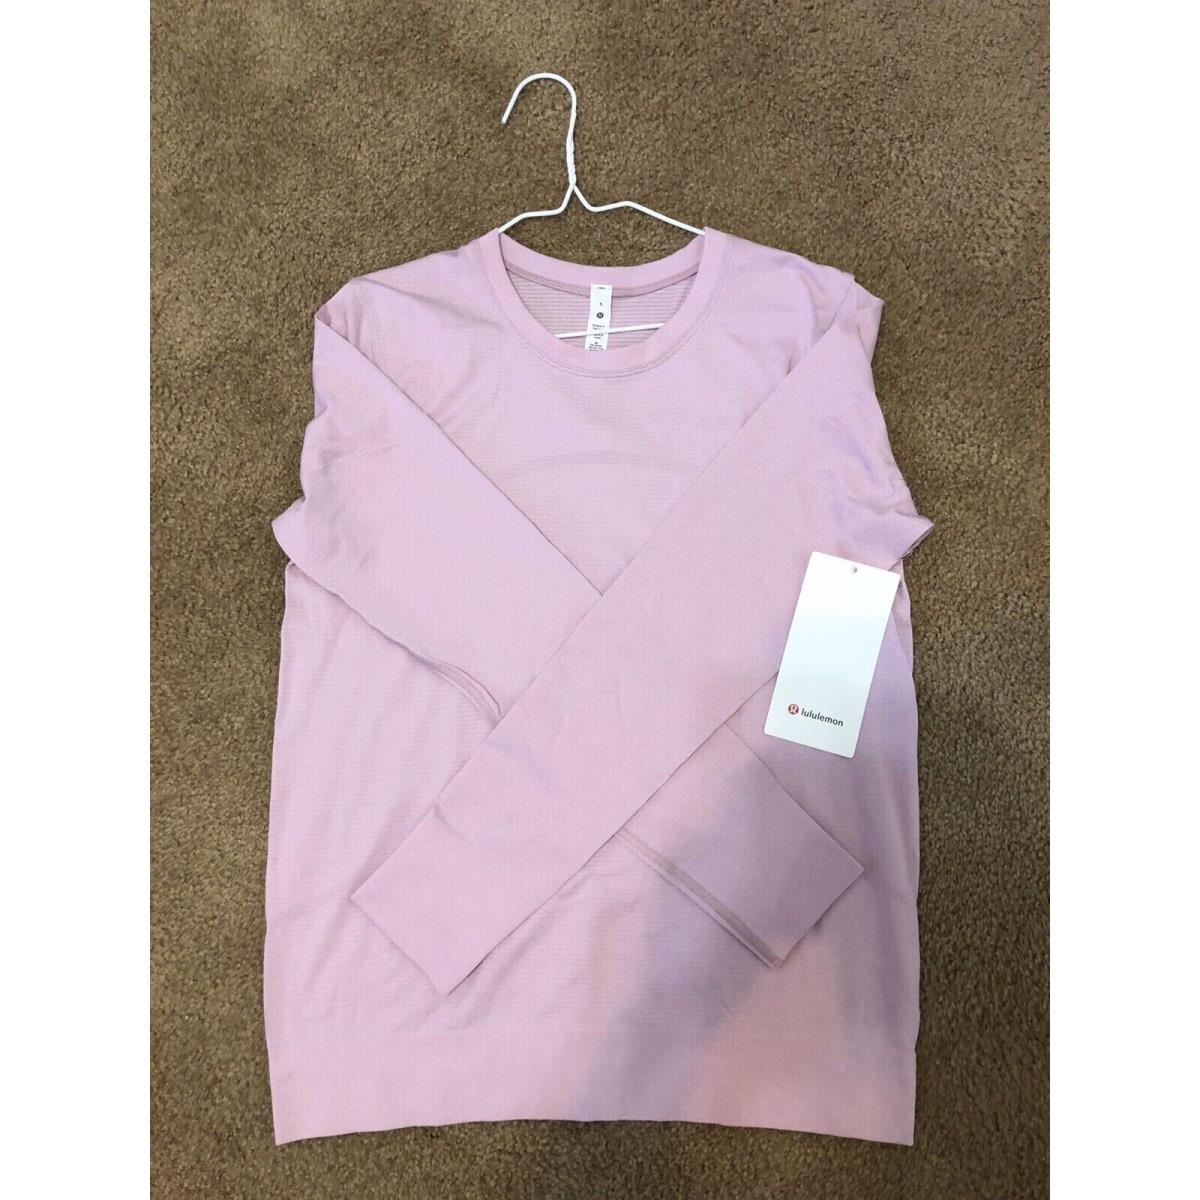 Women`s Lululemon Swiftly Relaxed Long Sleeve Shirt Size 8 - Pkpi Pink